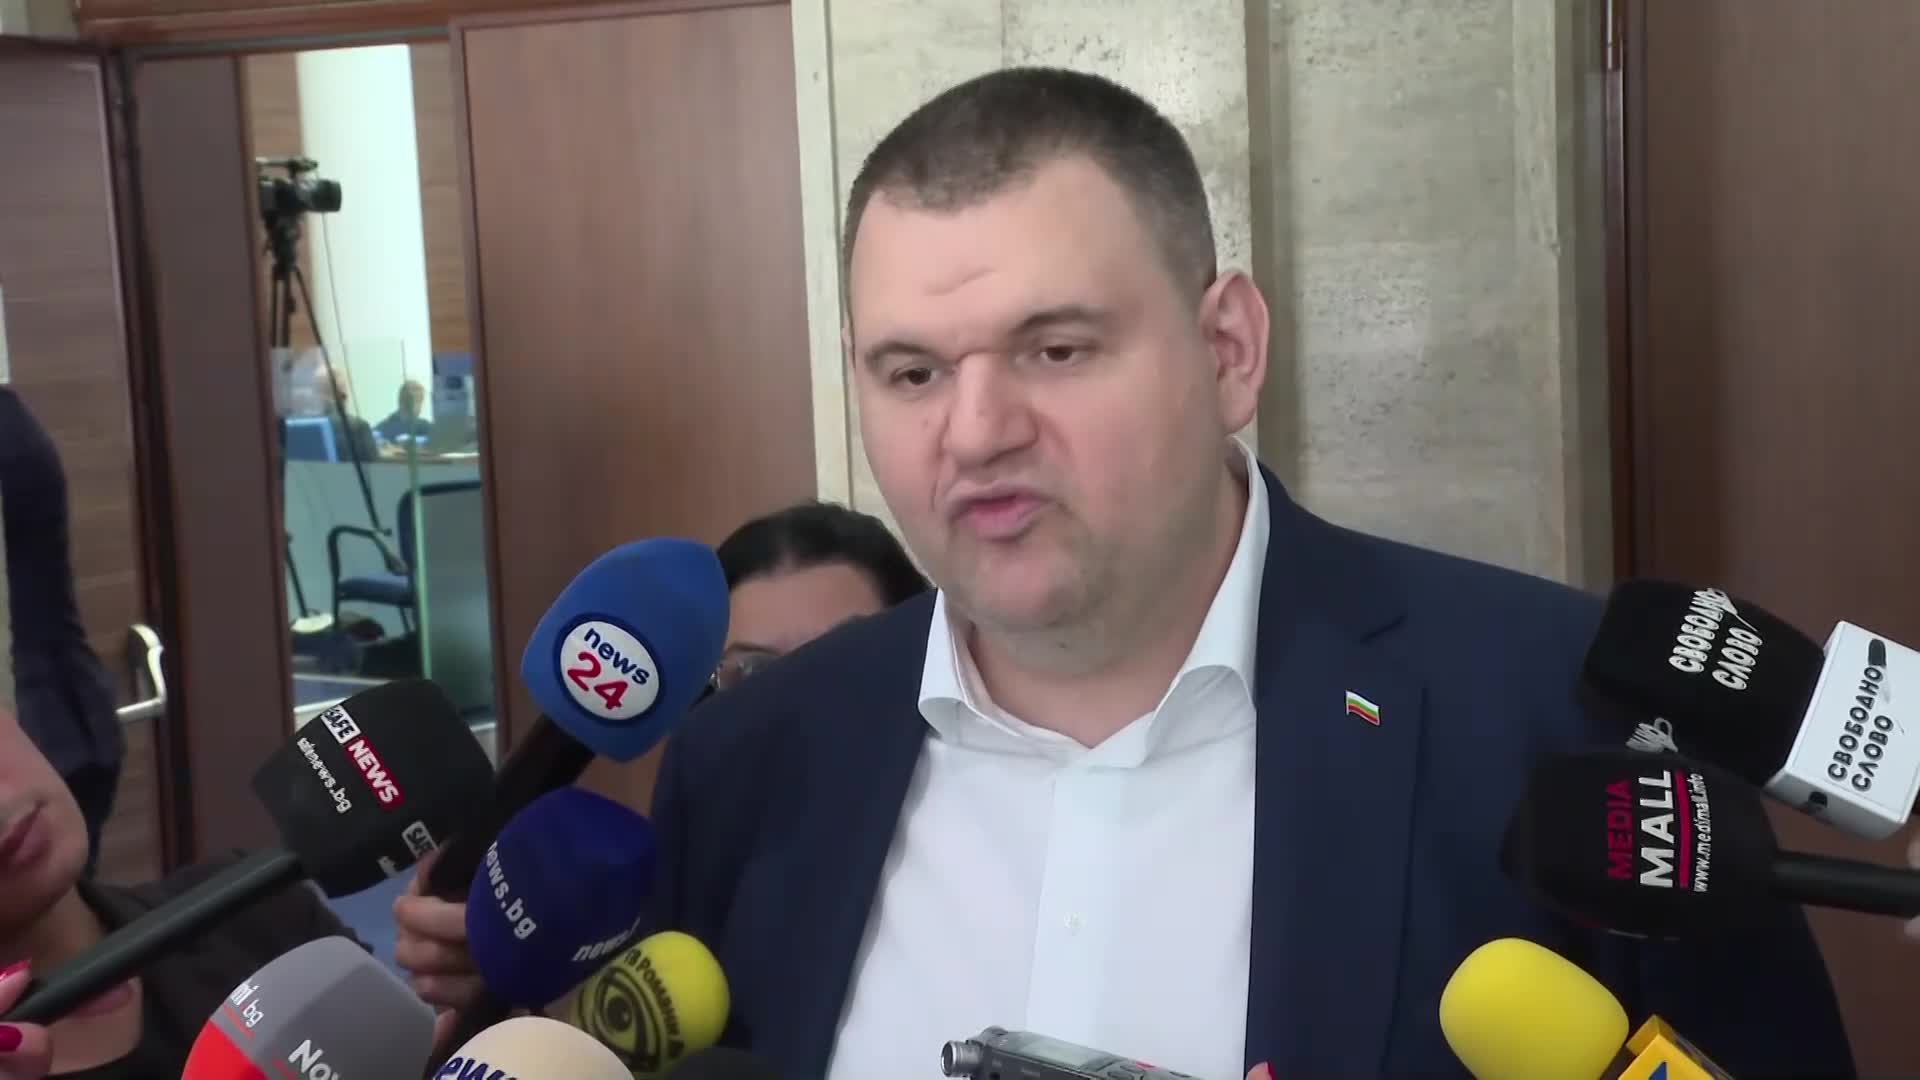 Пеевски: Няма да позволя на ПП-ДБ и ГЕРБ да разбият държавата